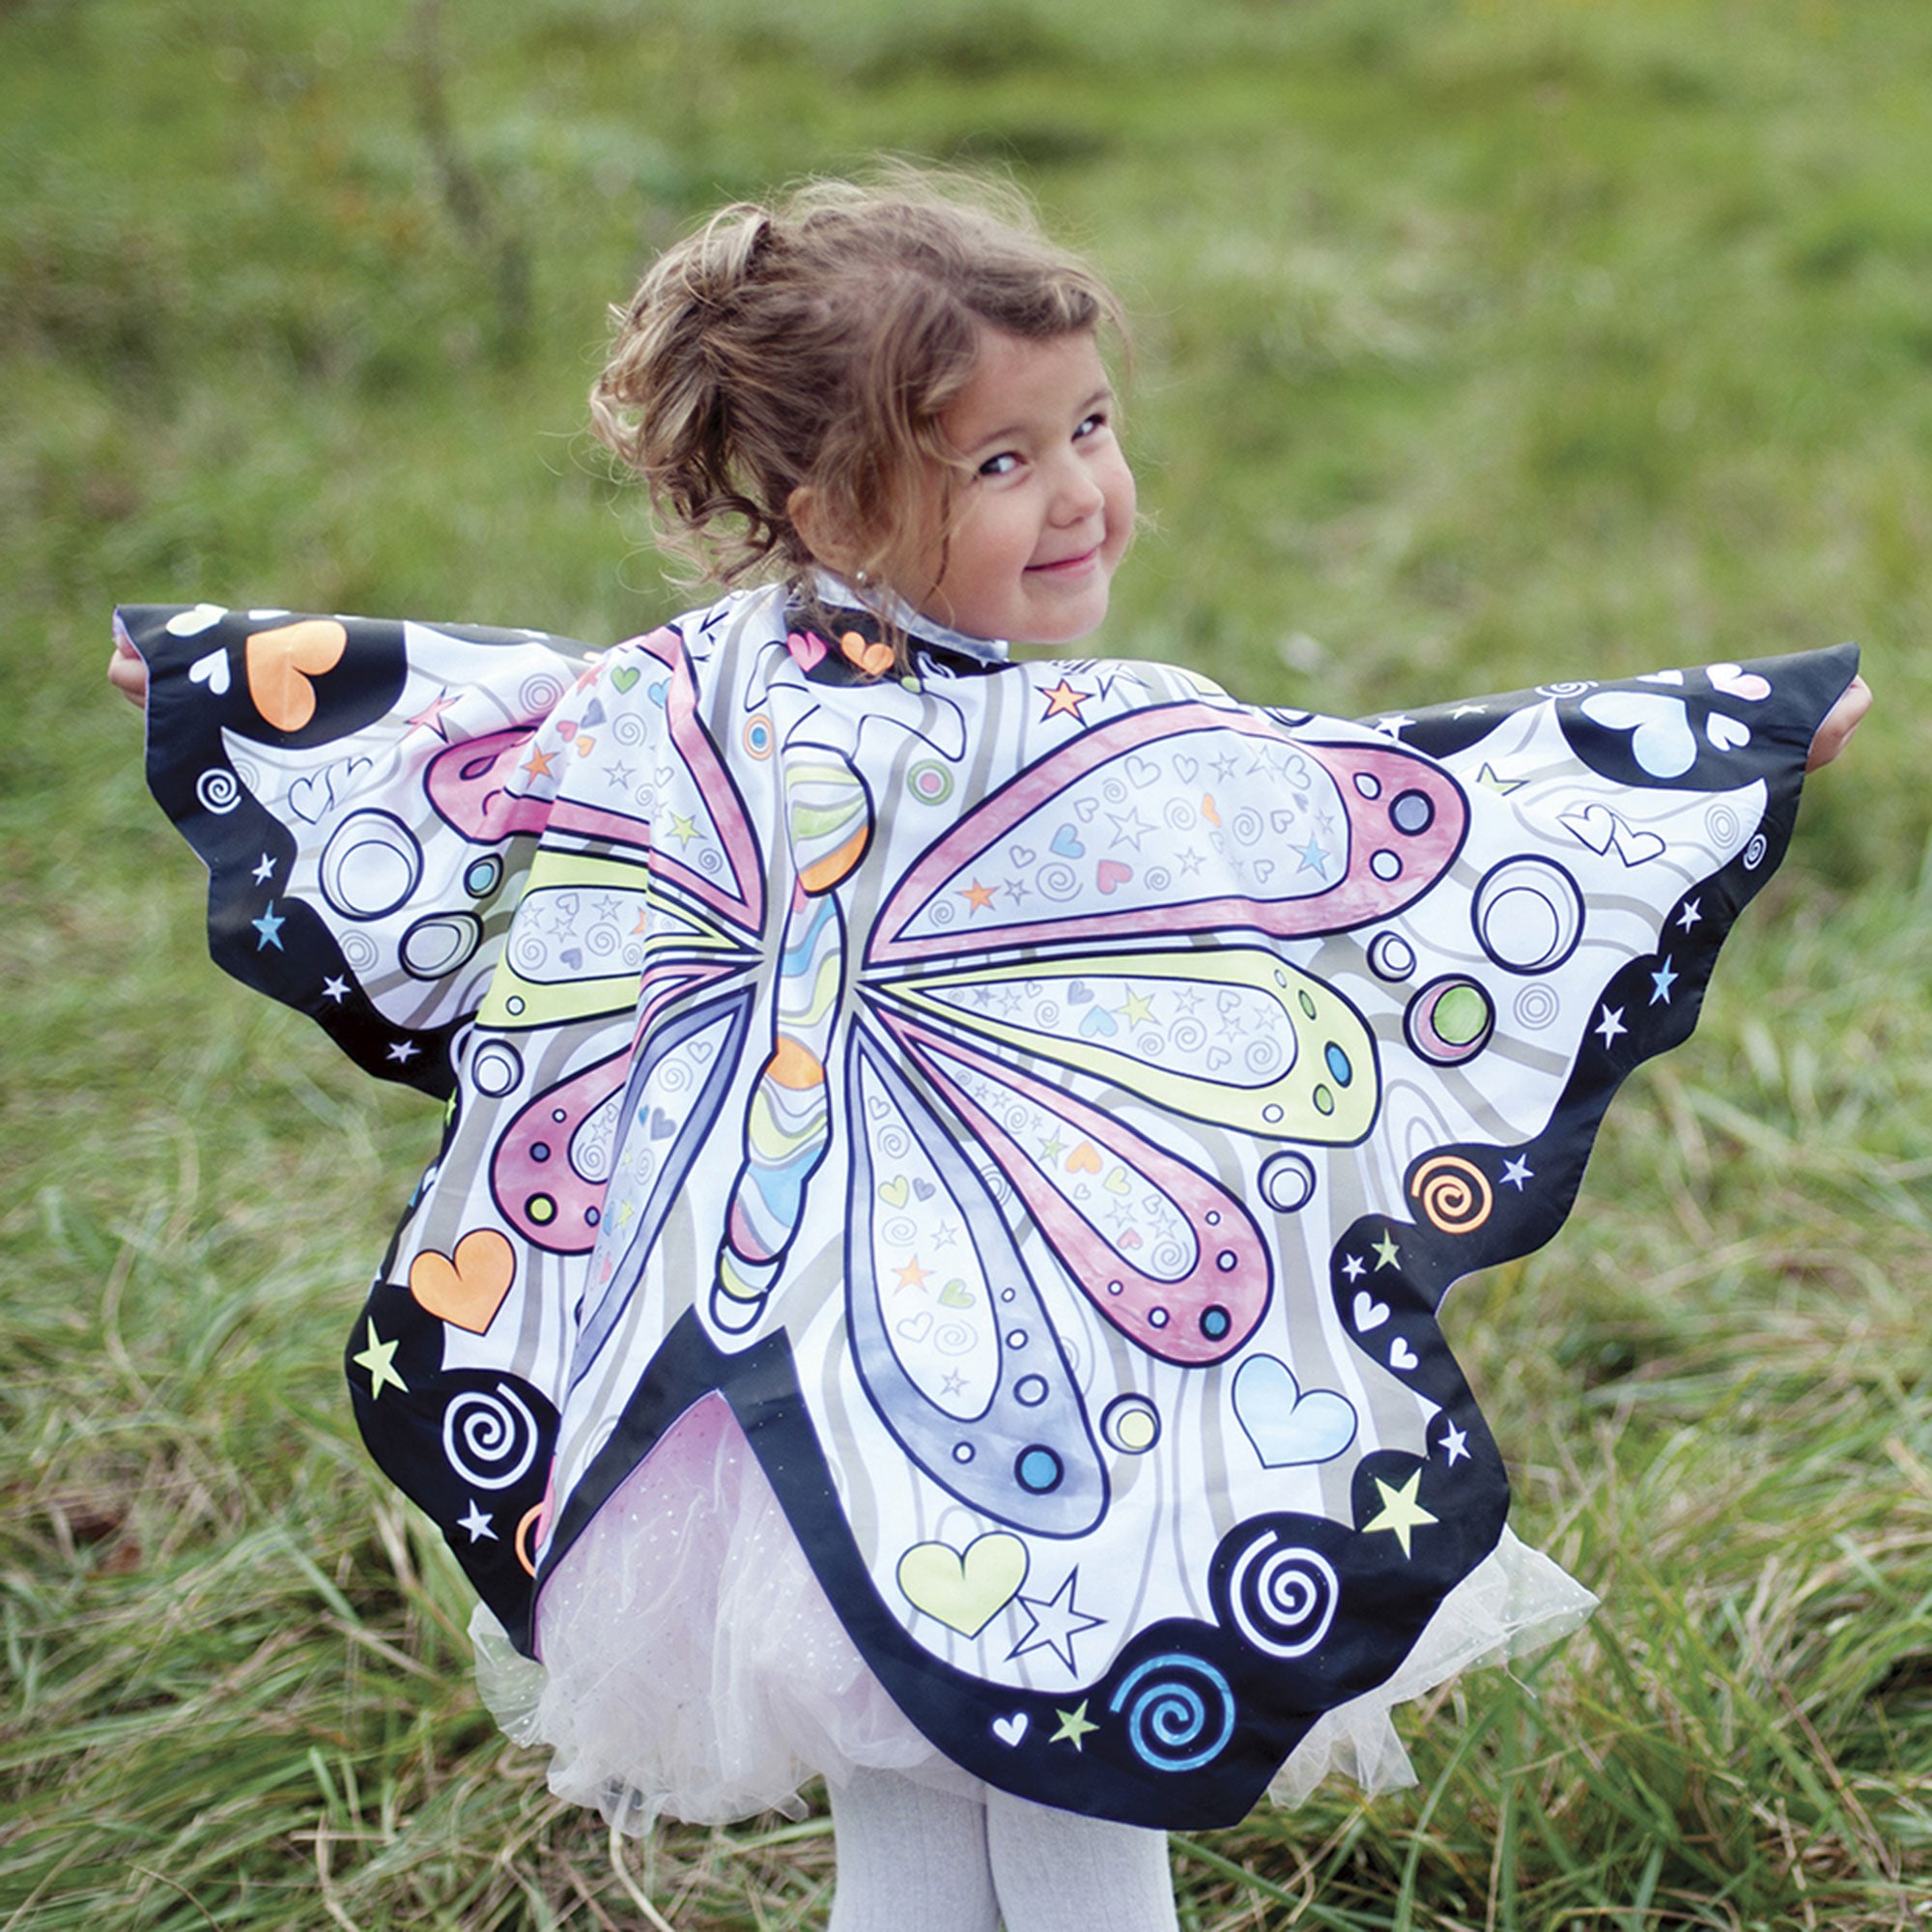 Ailes de fée pastel ailes de costume ailes de papillon accessoires